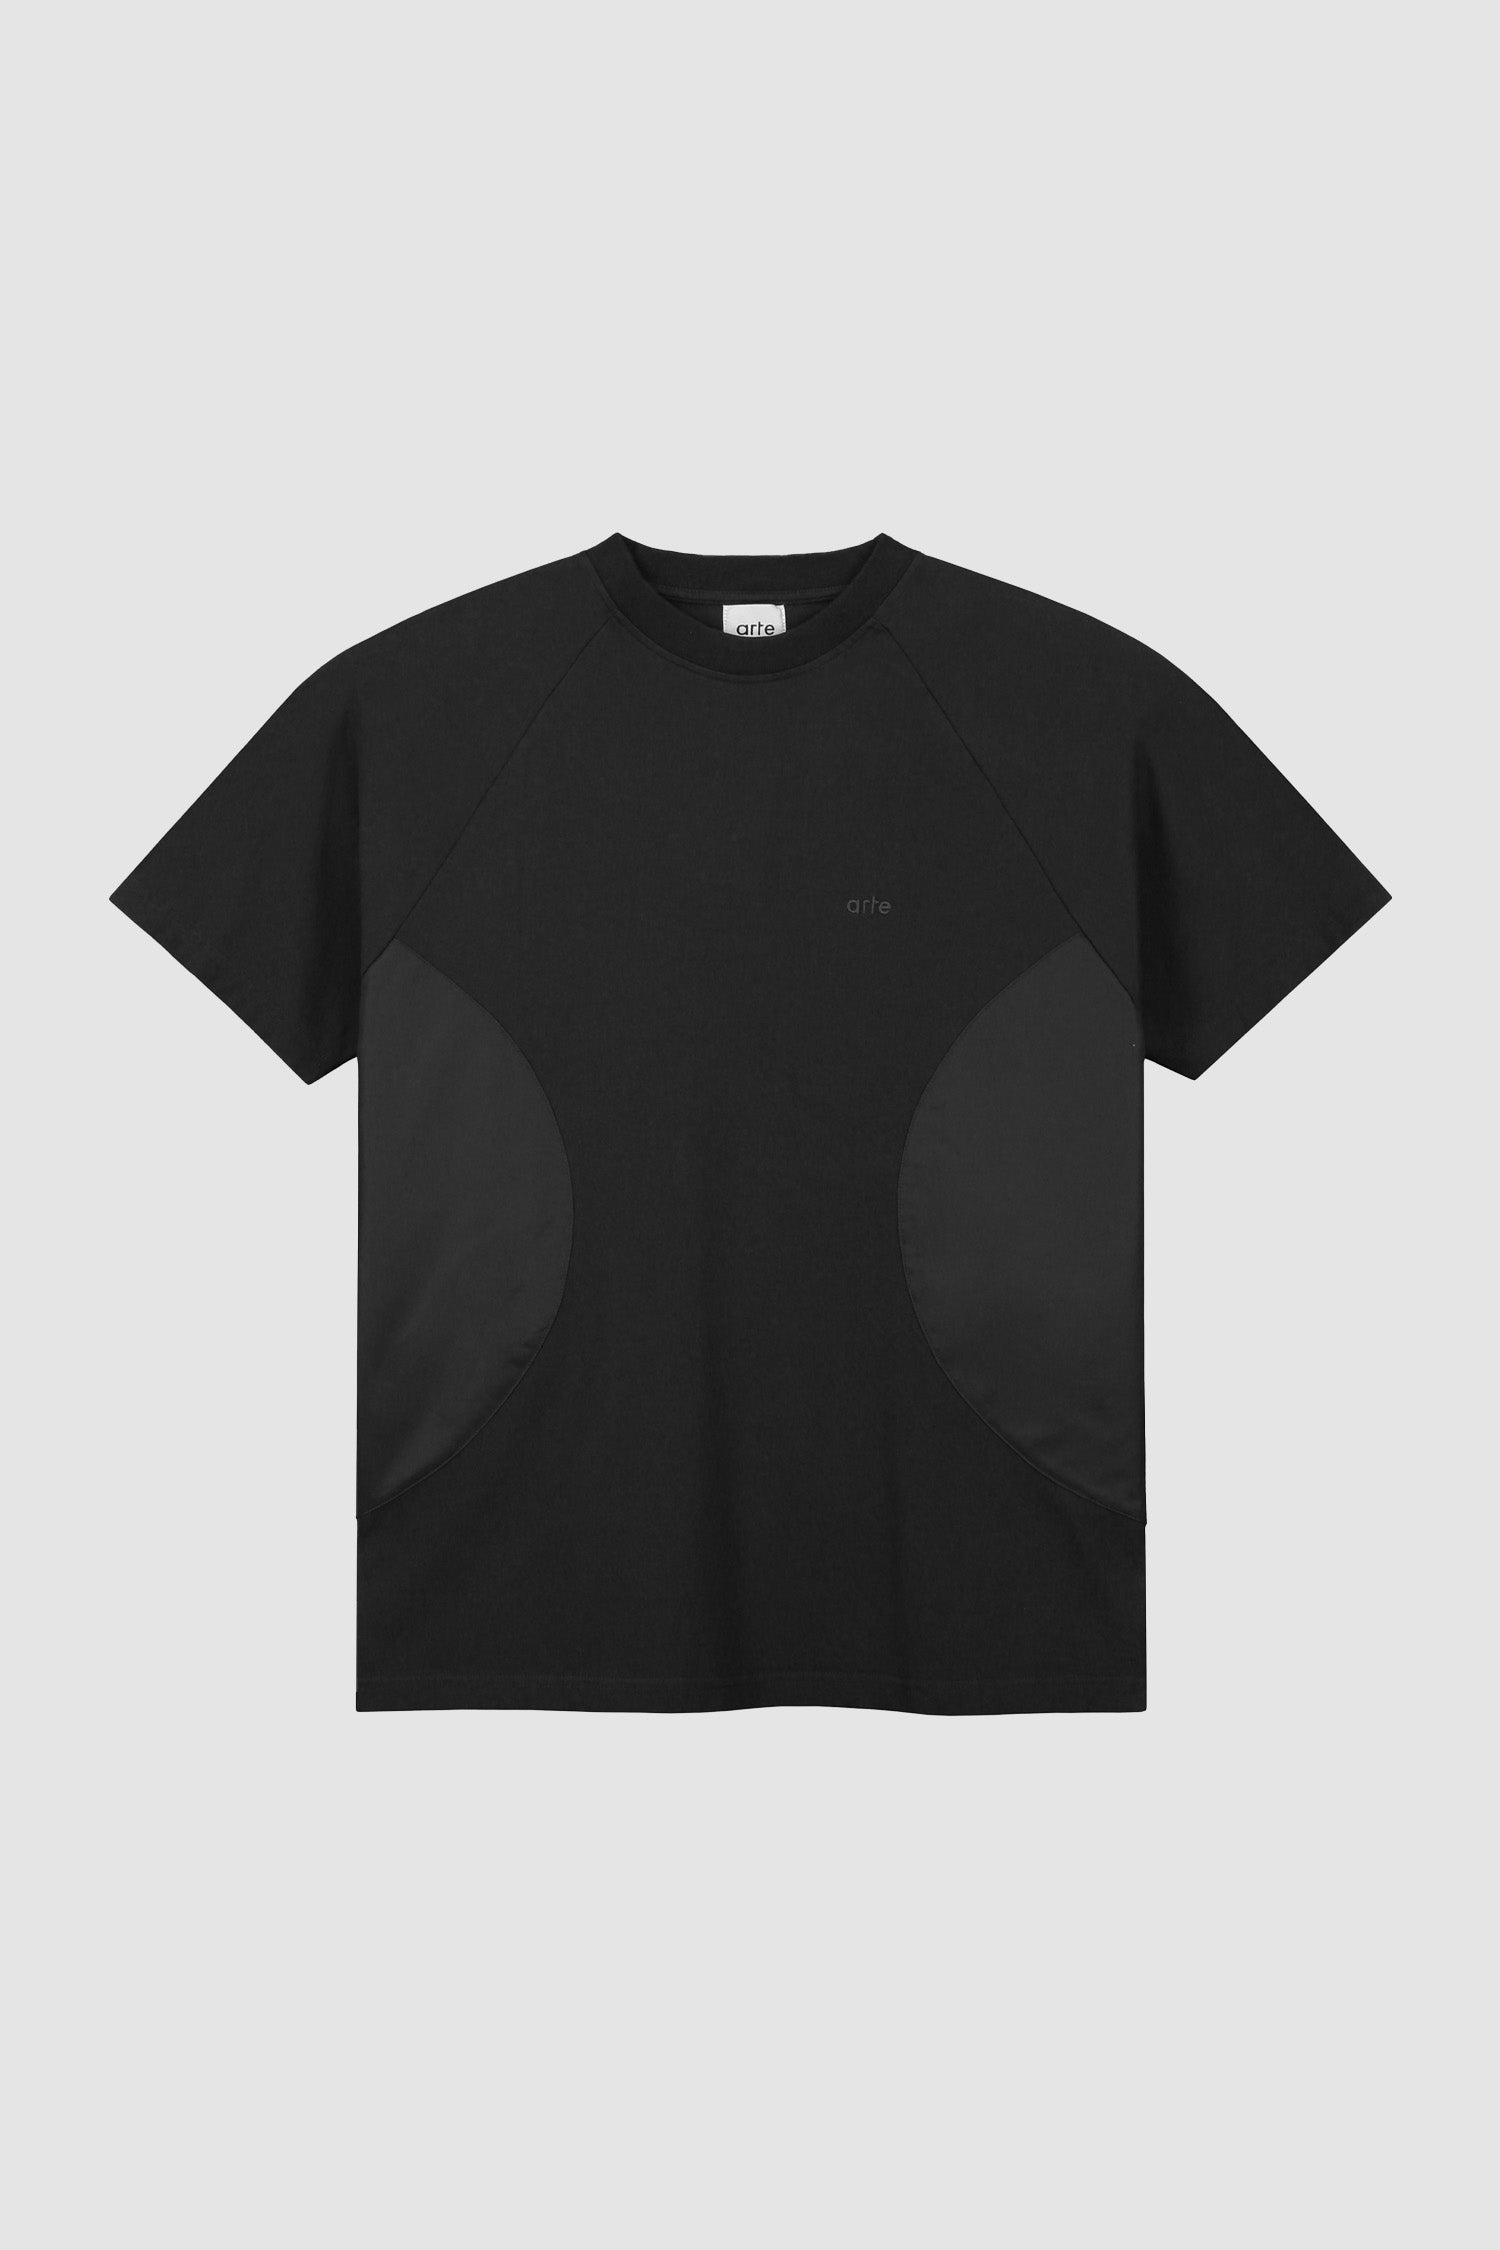 Theo W Cuts T-shirt - Black